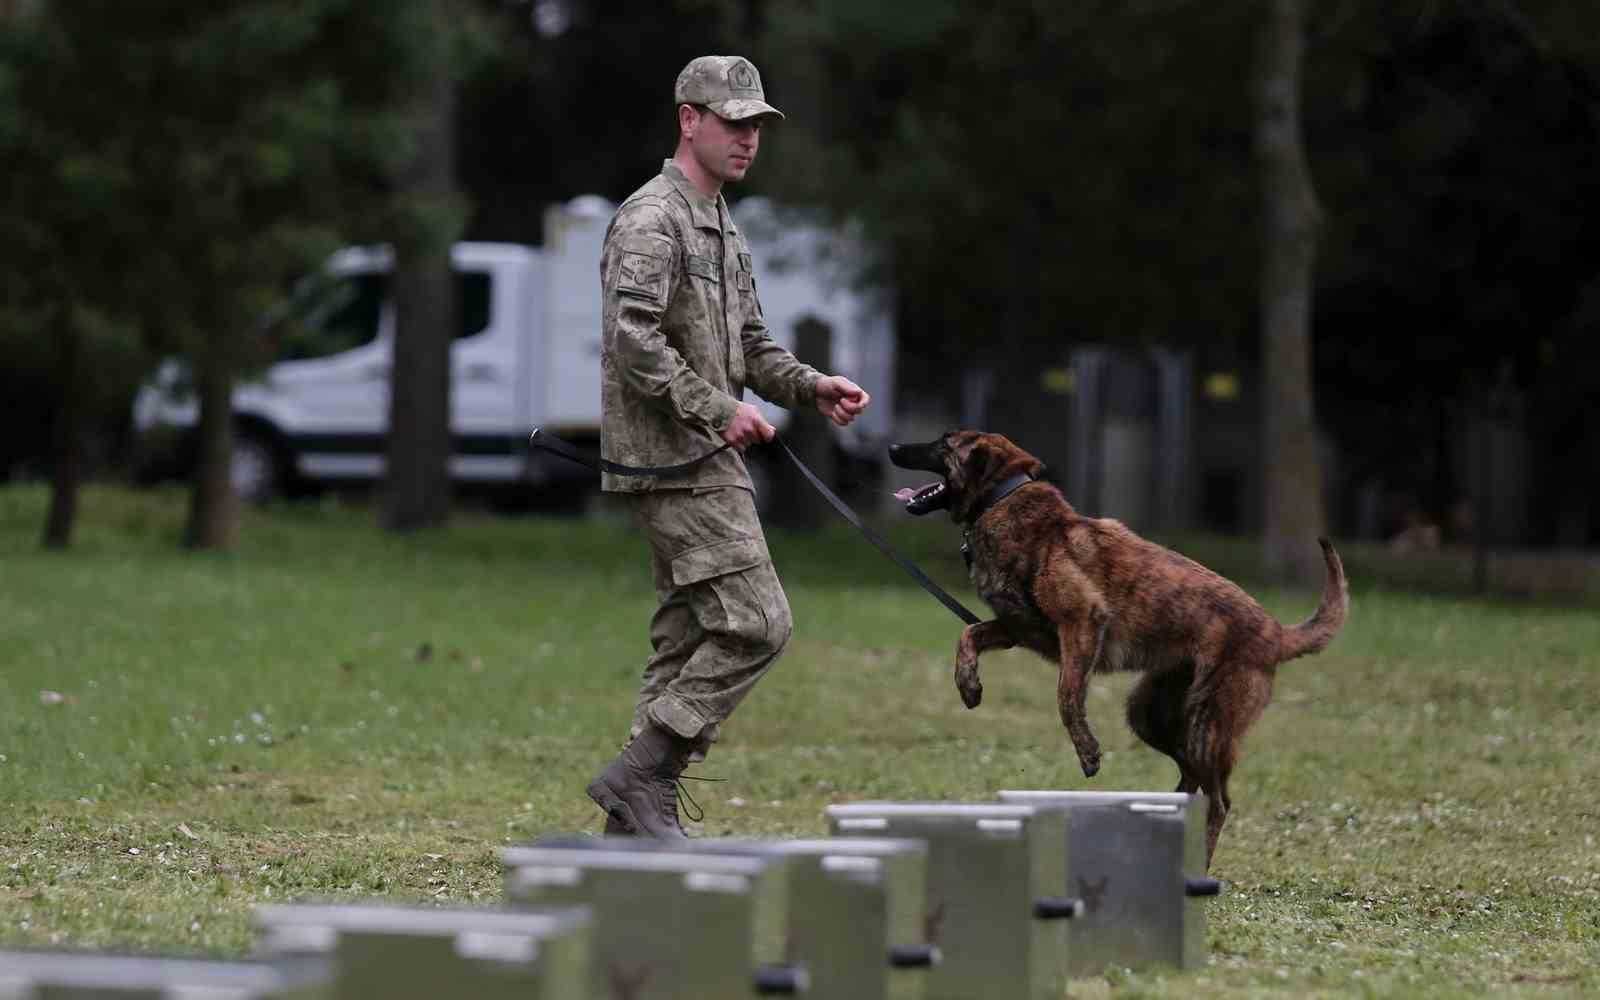 Bomba uzmanı köpeklerin nefes kesen eğitimi